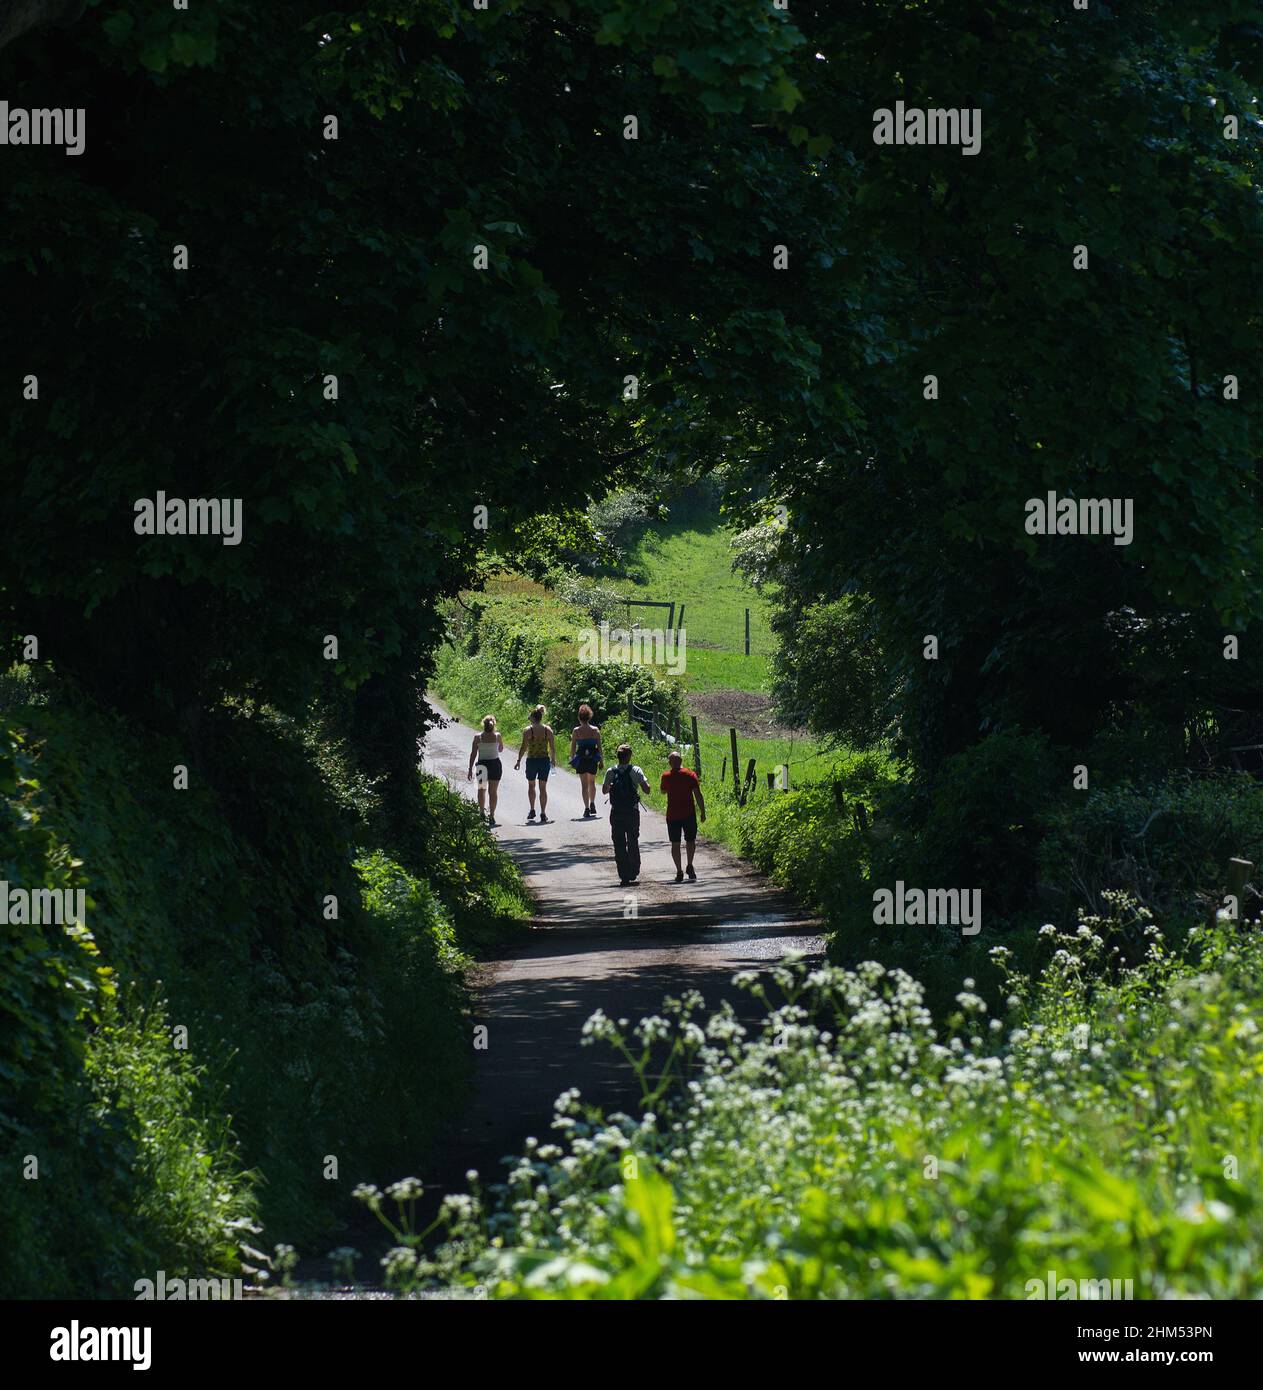 Imagen de color cuadrado de cinco personas en un paseo de verano a lo largo de un camino de campo y pasando por un arco causado por árboles que cuelgan Foto de stock